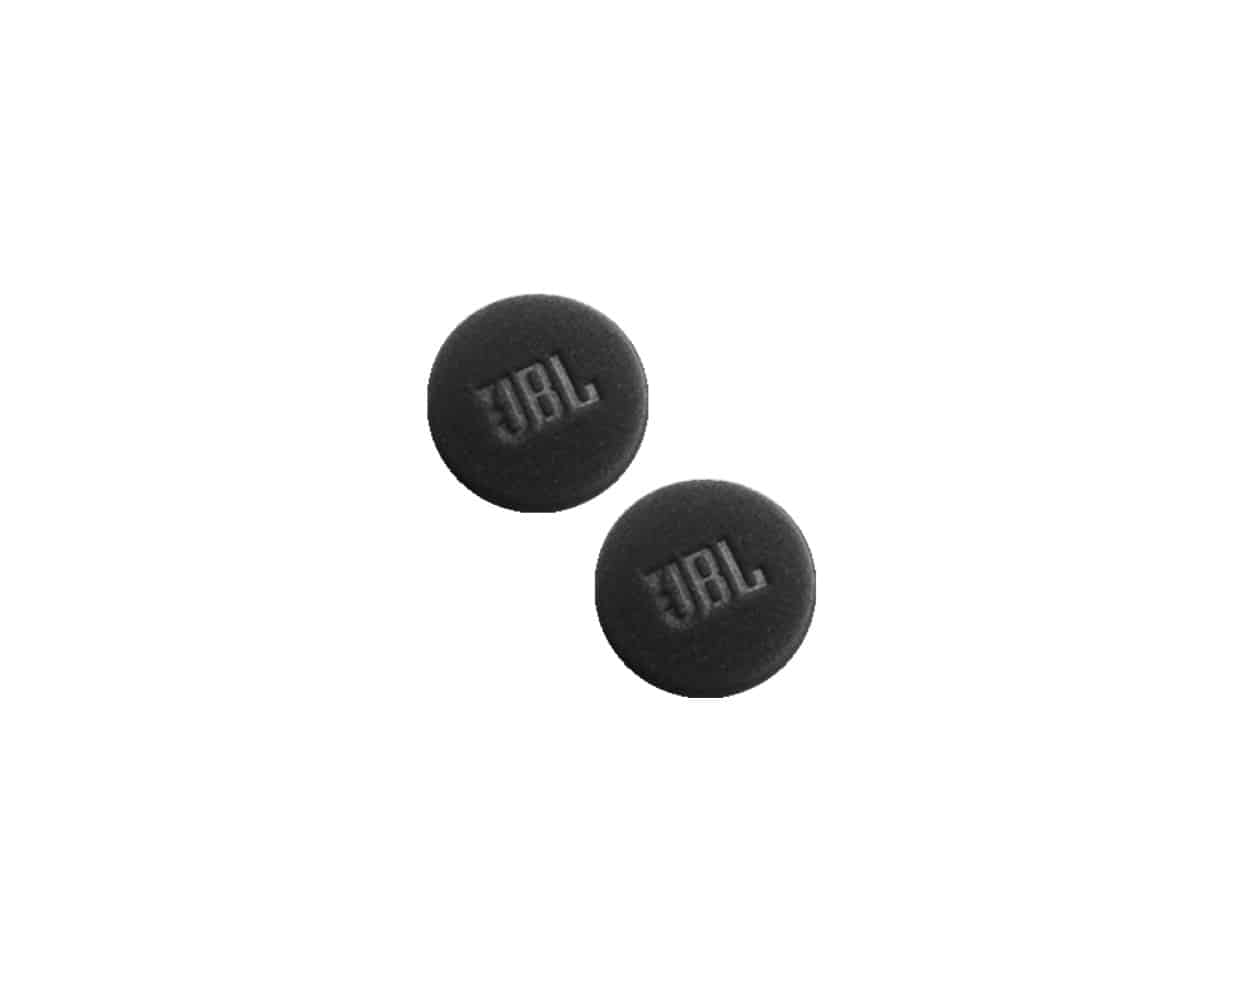 Cardo Accessories - JBL 45MM HD Speakers Cardo